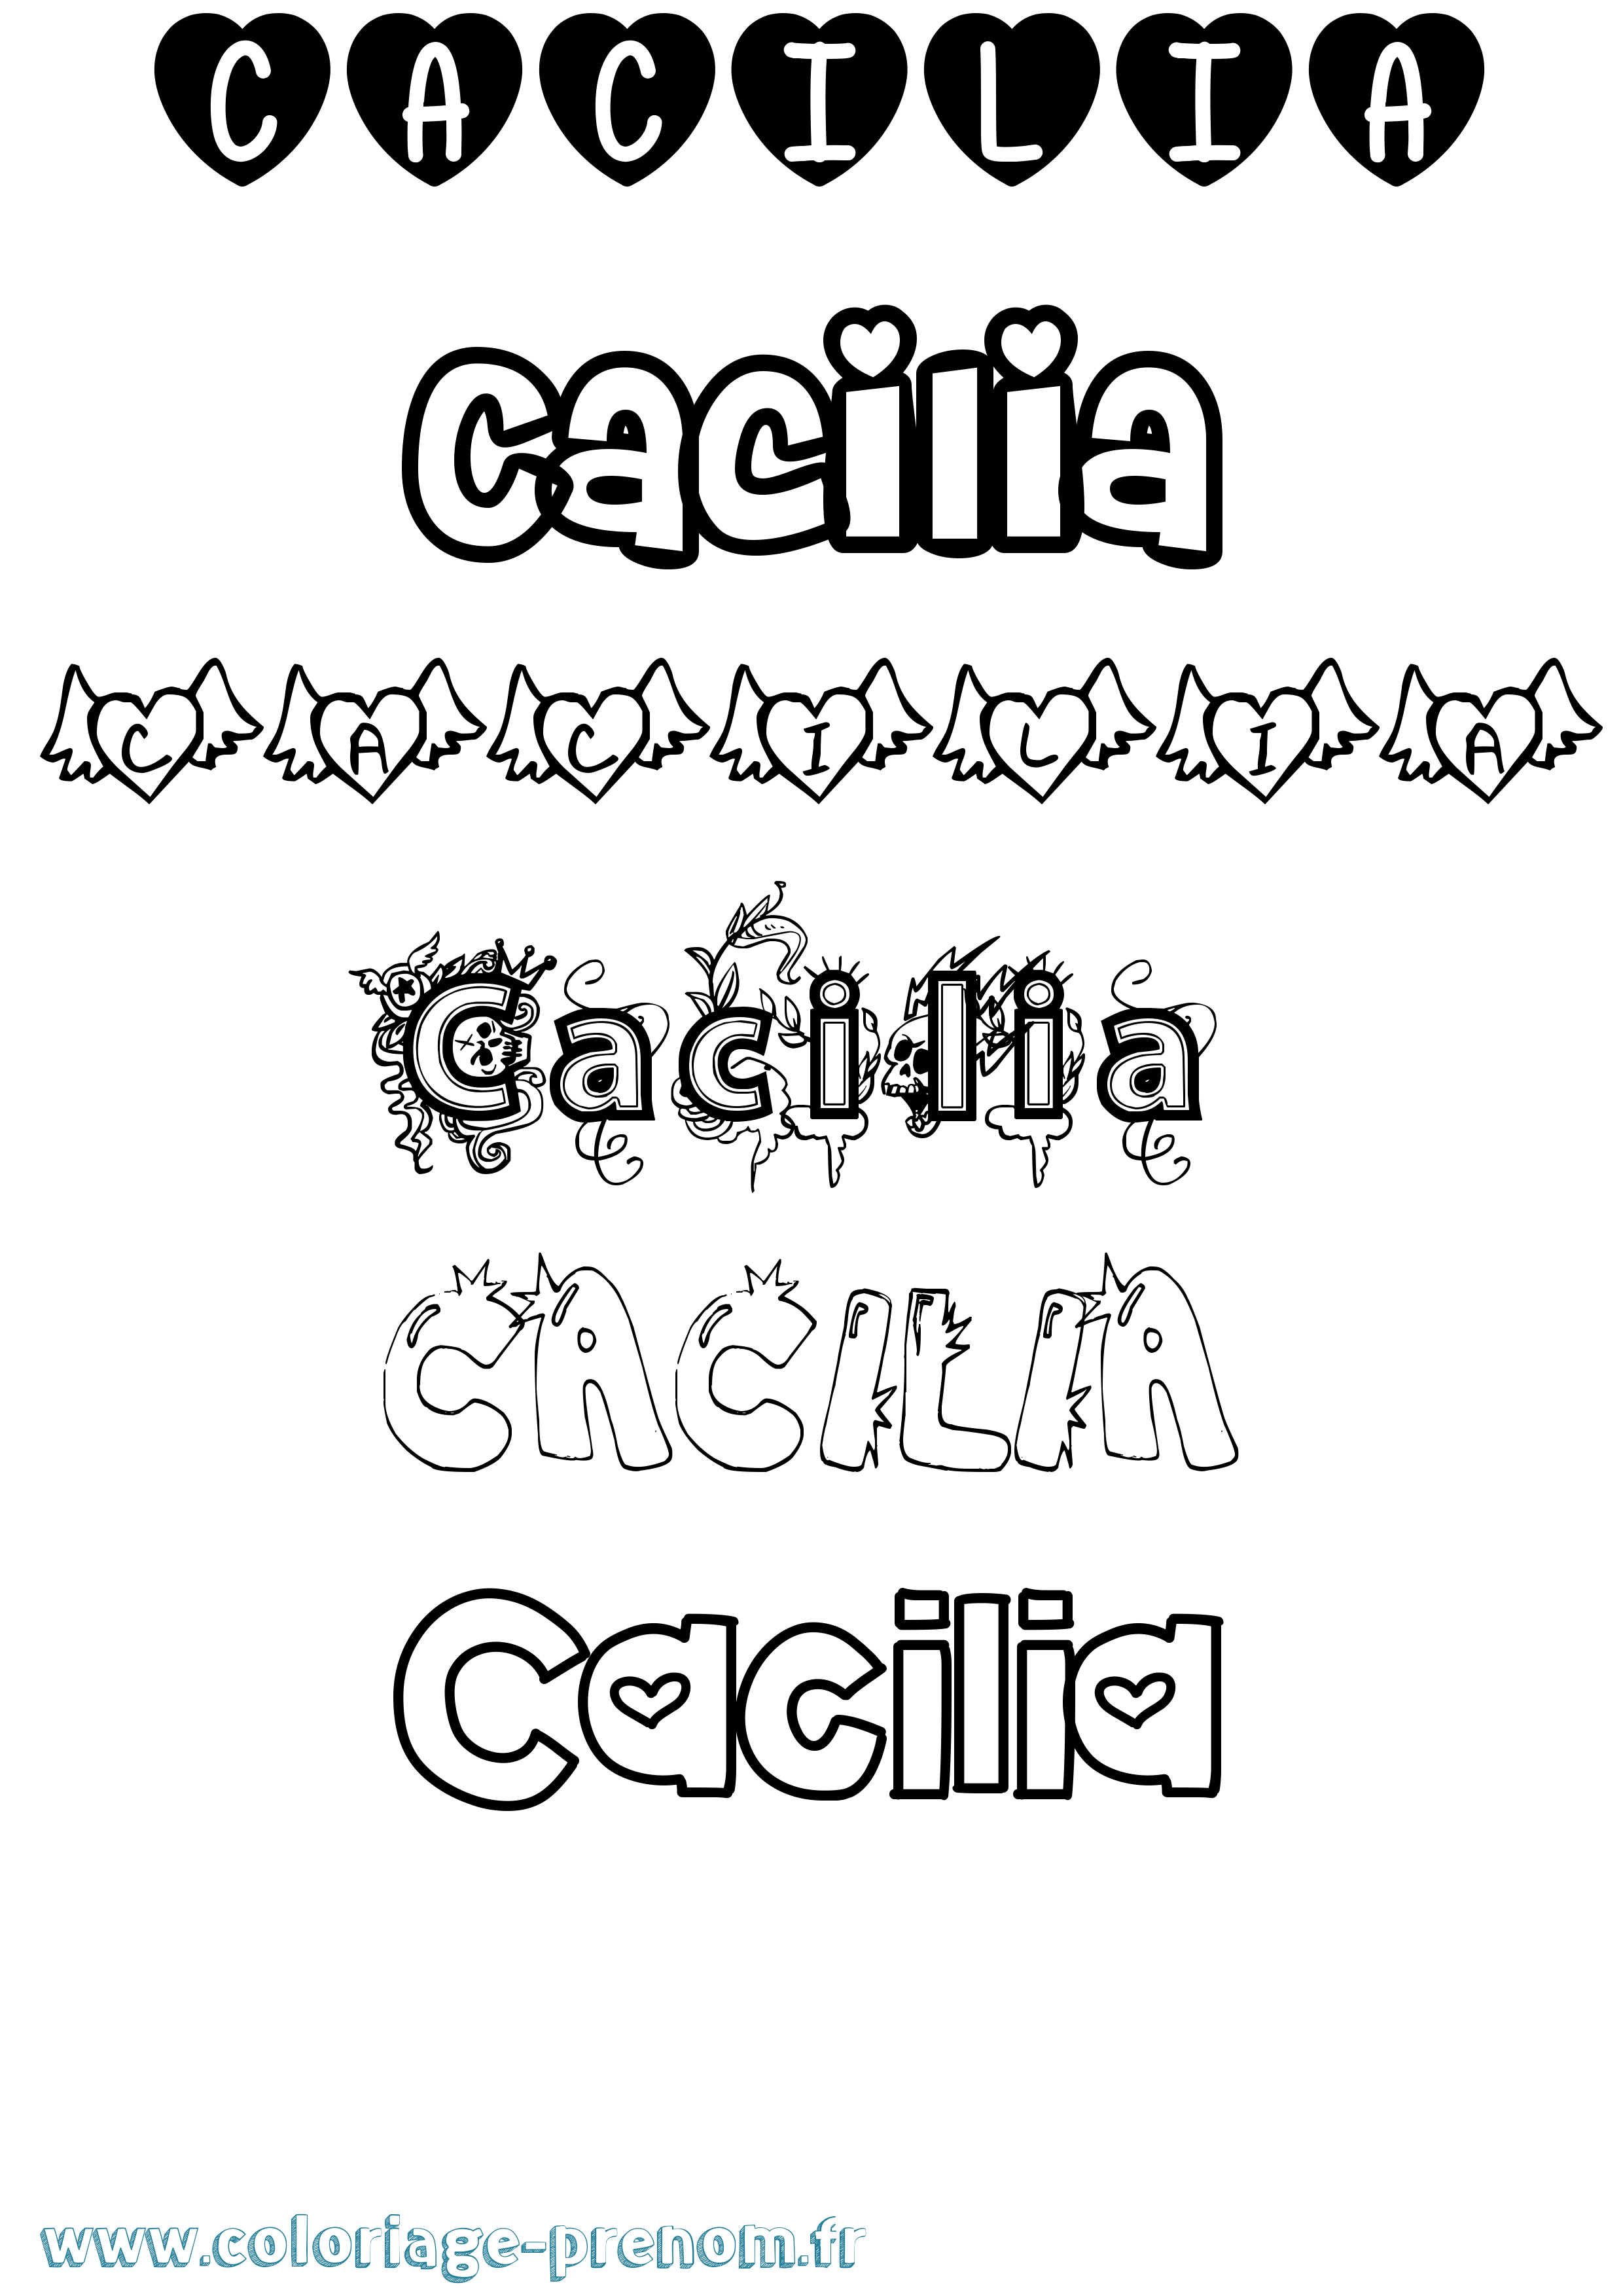 Coloriage prénom Cacilia Girly